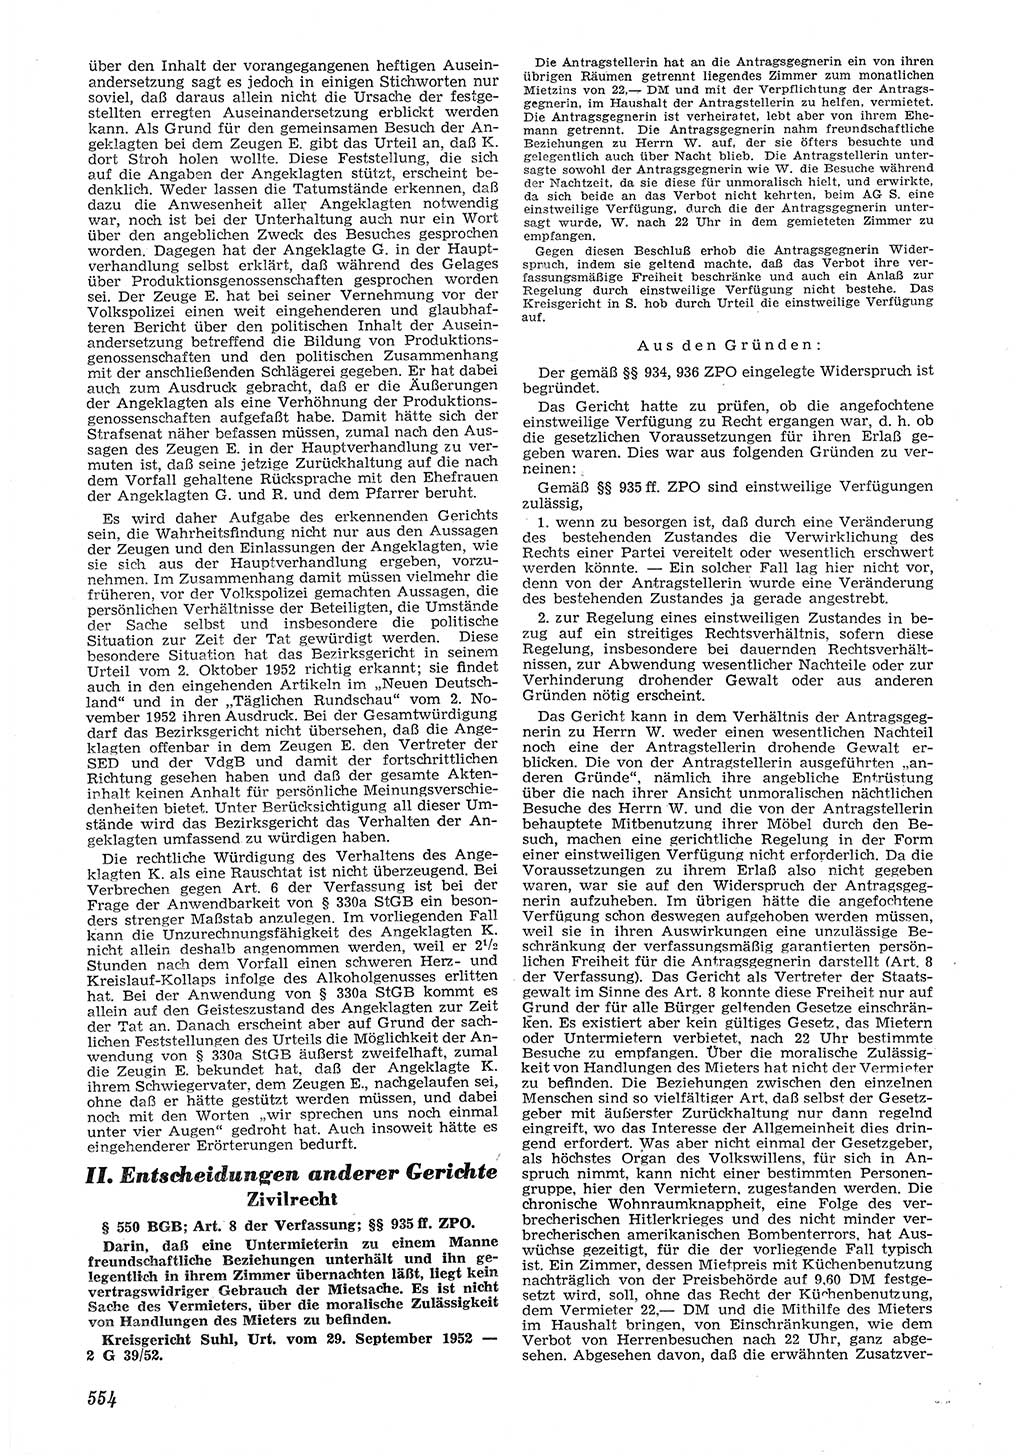 Neue Justiz (NJ), Zeitschrift für Recht und Rechtswissenschaft [Deutsche Demokratische Republik (DDR)], 6. Jahrgang 1952, Seite 554 (NJ DDR 1952, S. 554)